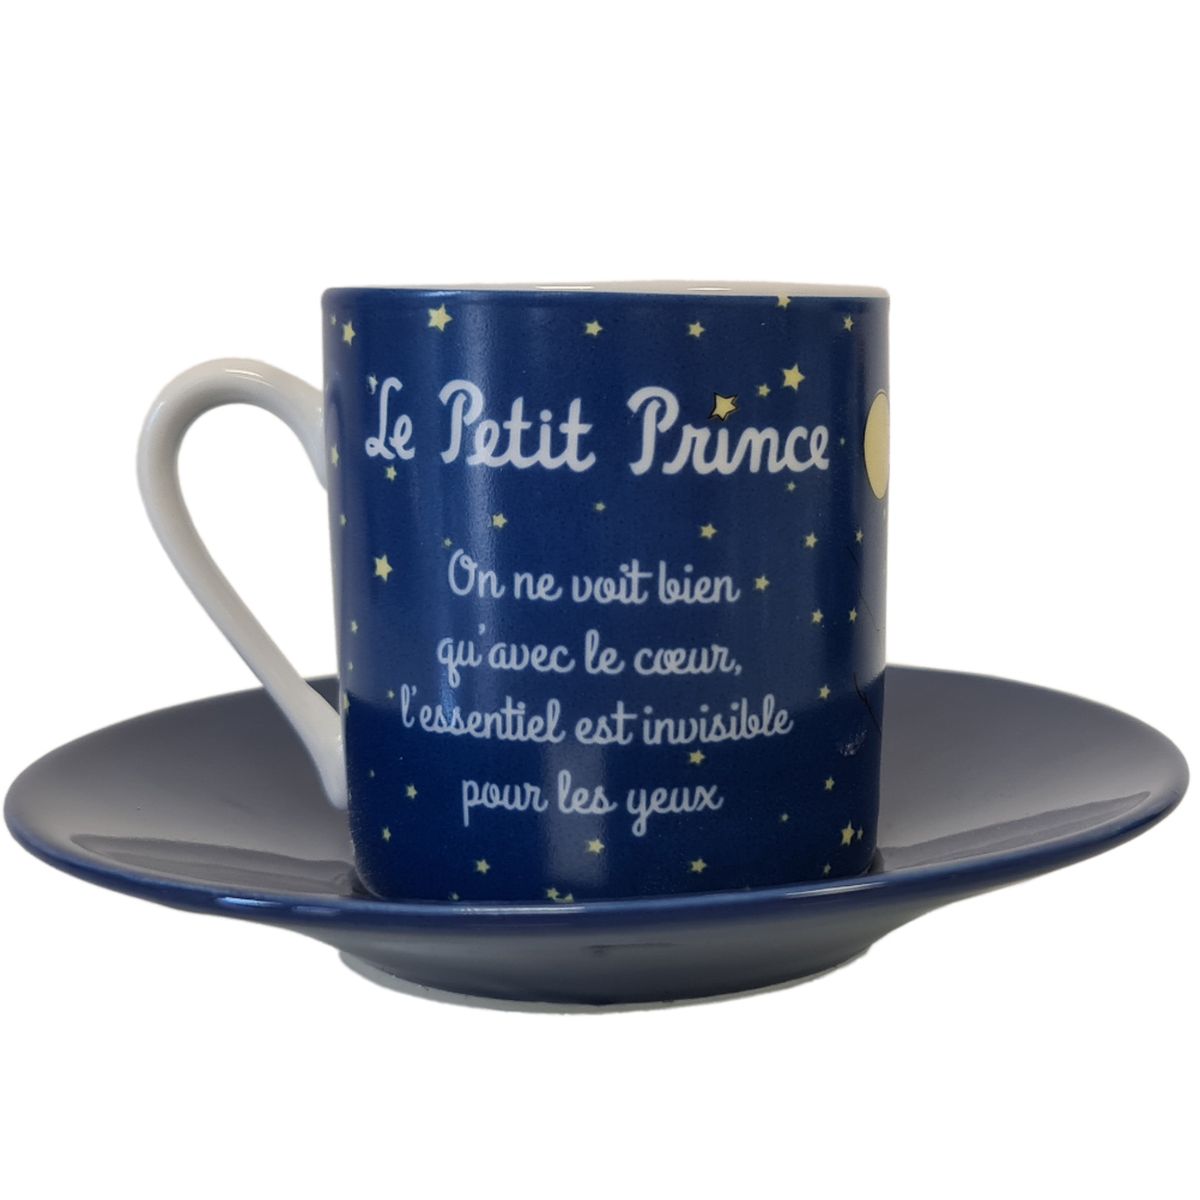 Le Petit Prince de St Exupry Box sets of 2 cups